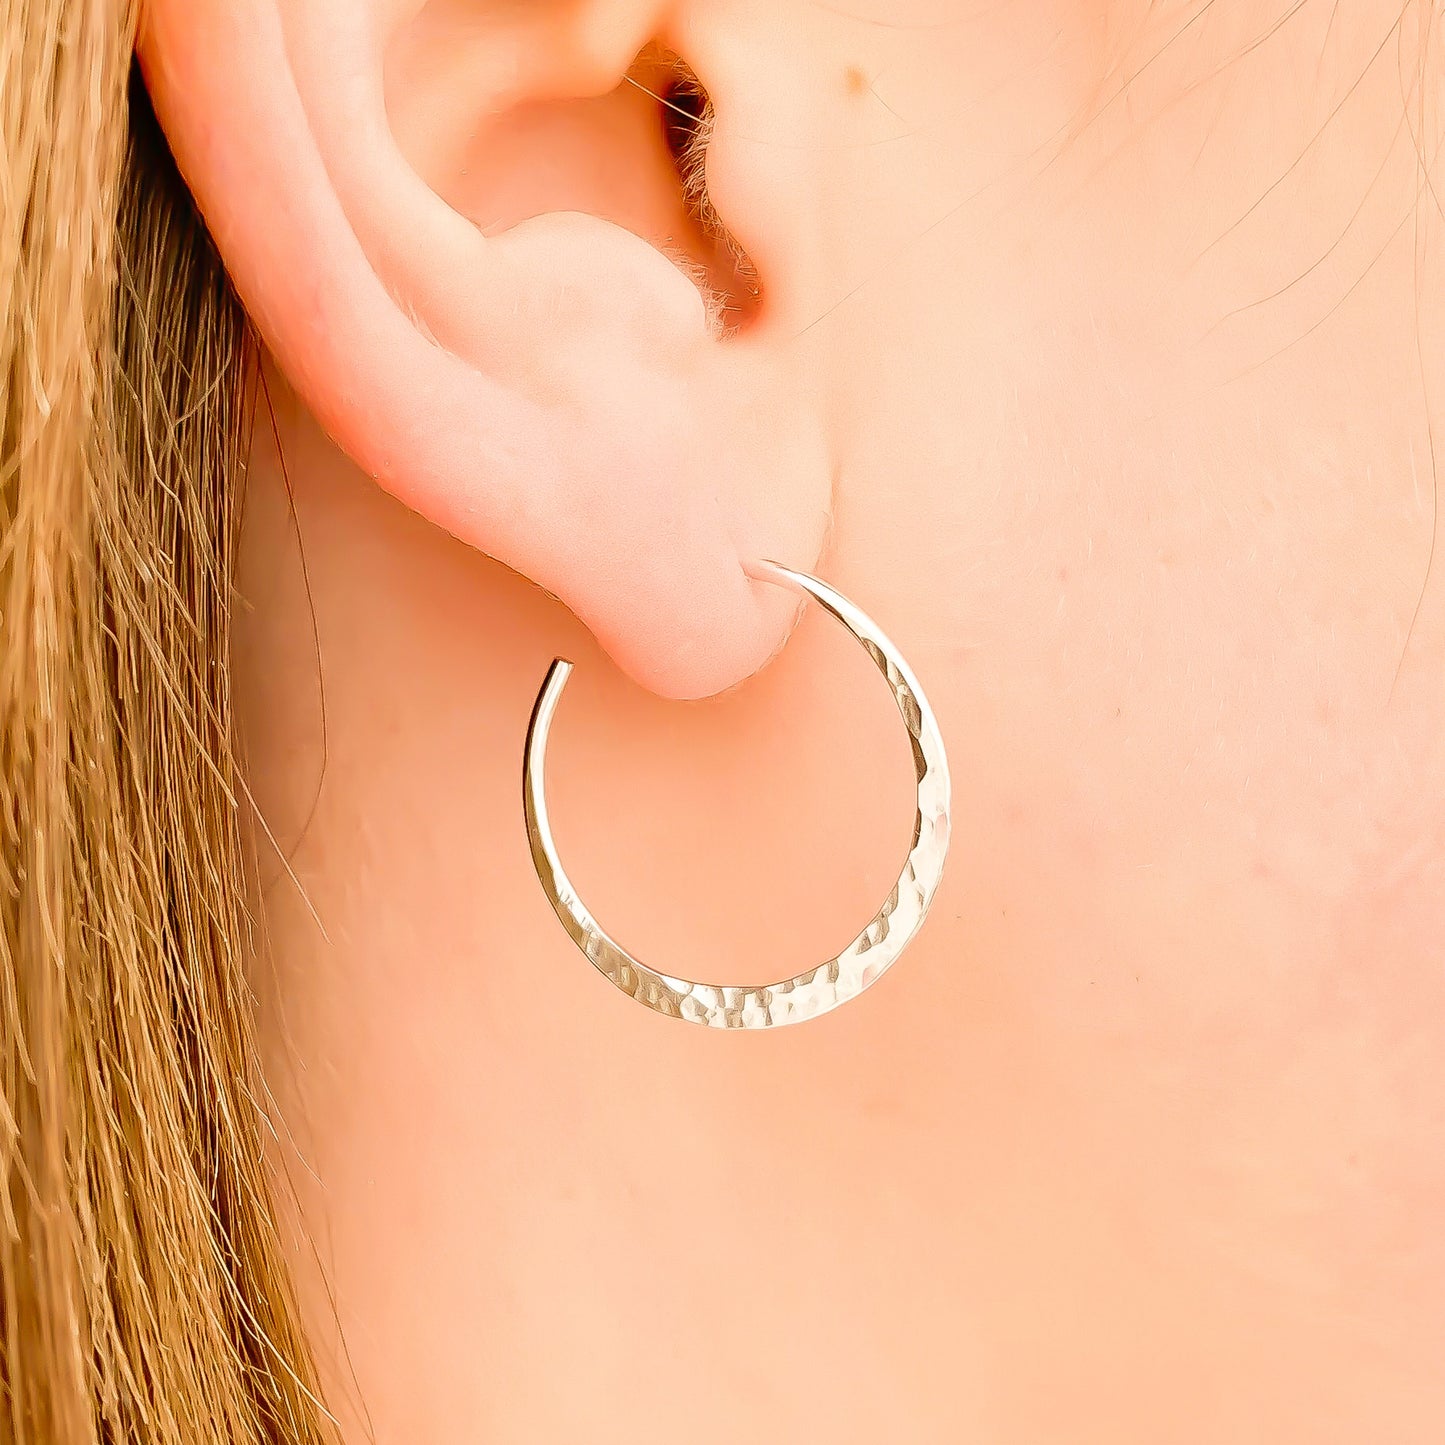 25mm Hammered Hoop Earrings, Sterling Silver